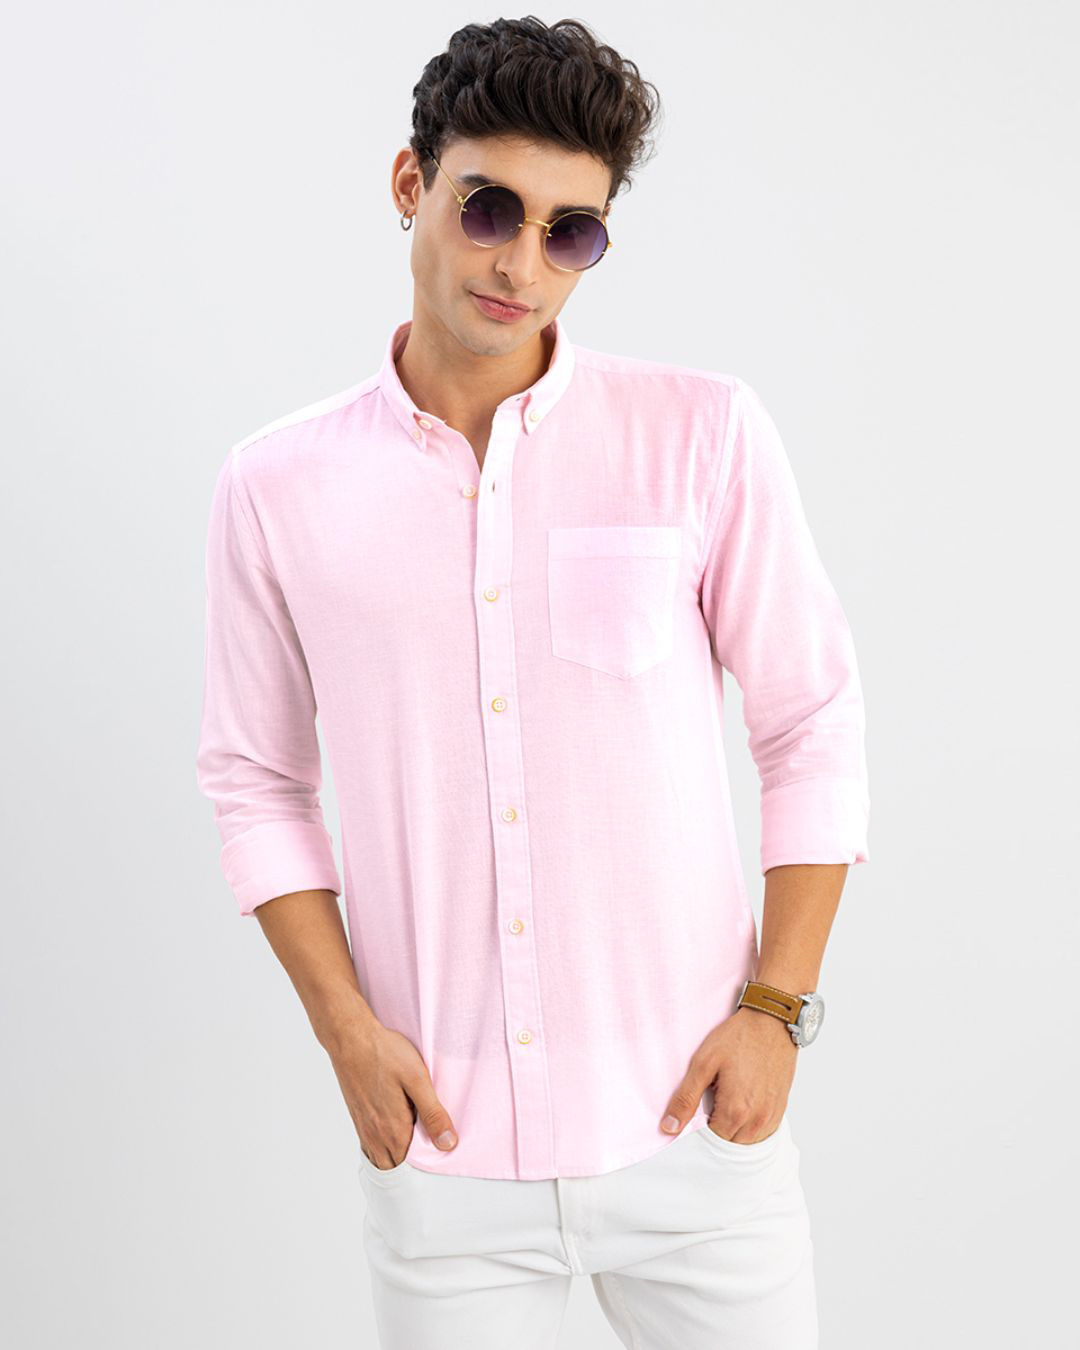 Buy Men's Pink Slim Fit Shirt Online at Bewakoof